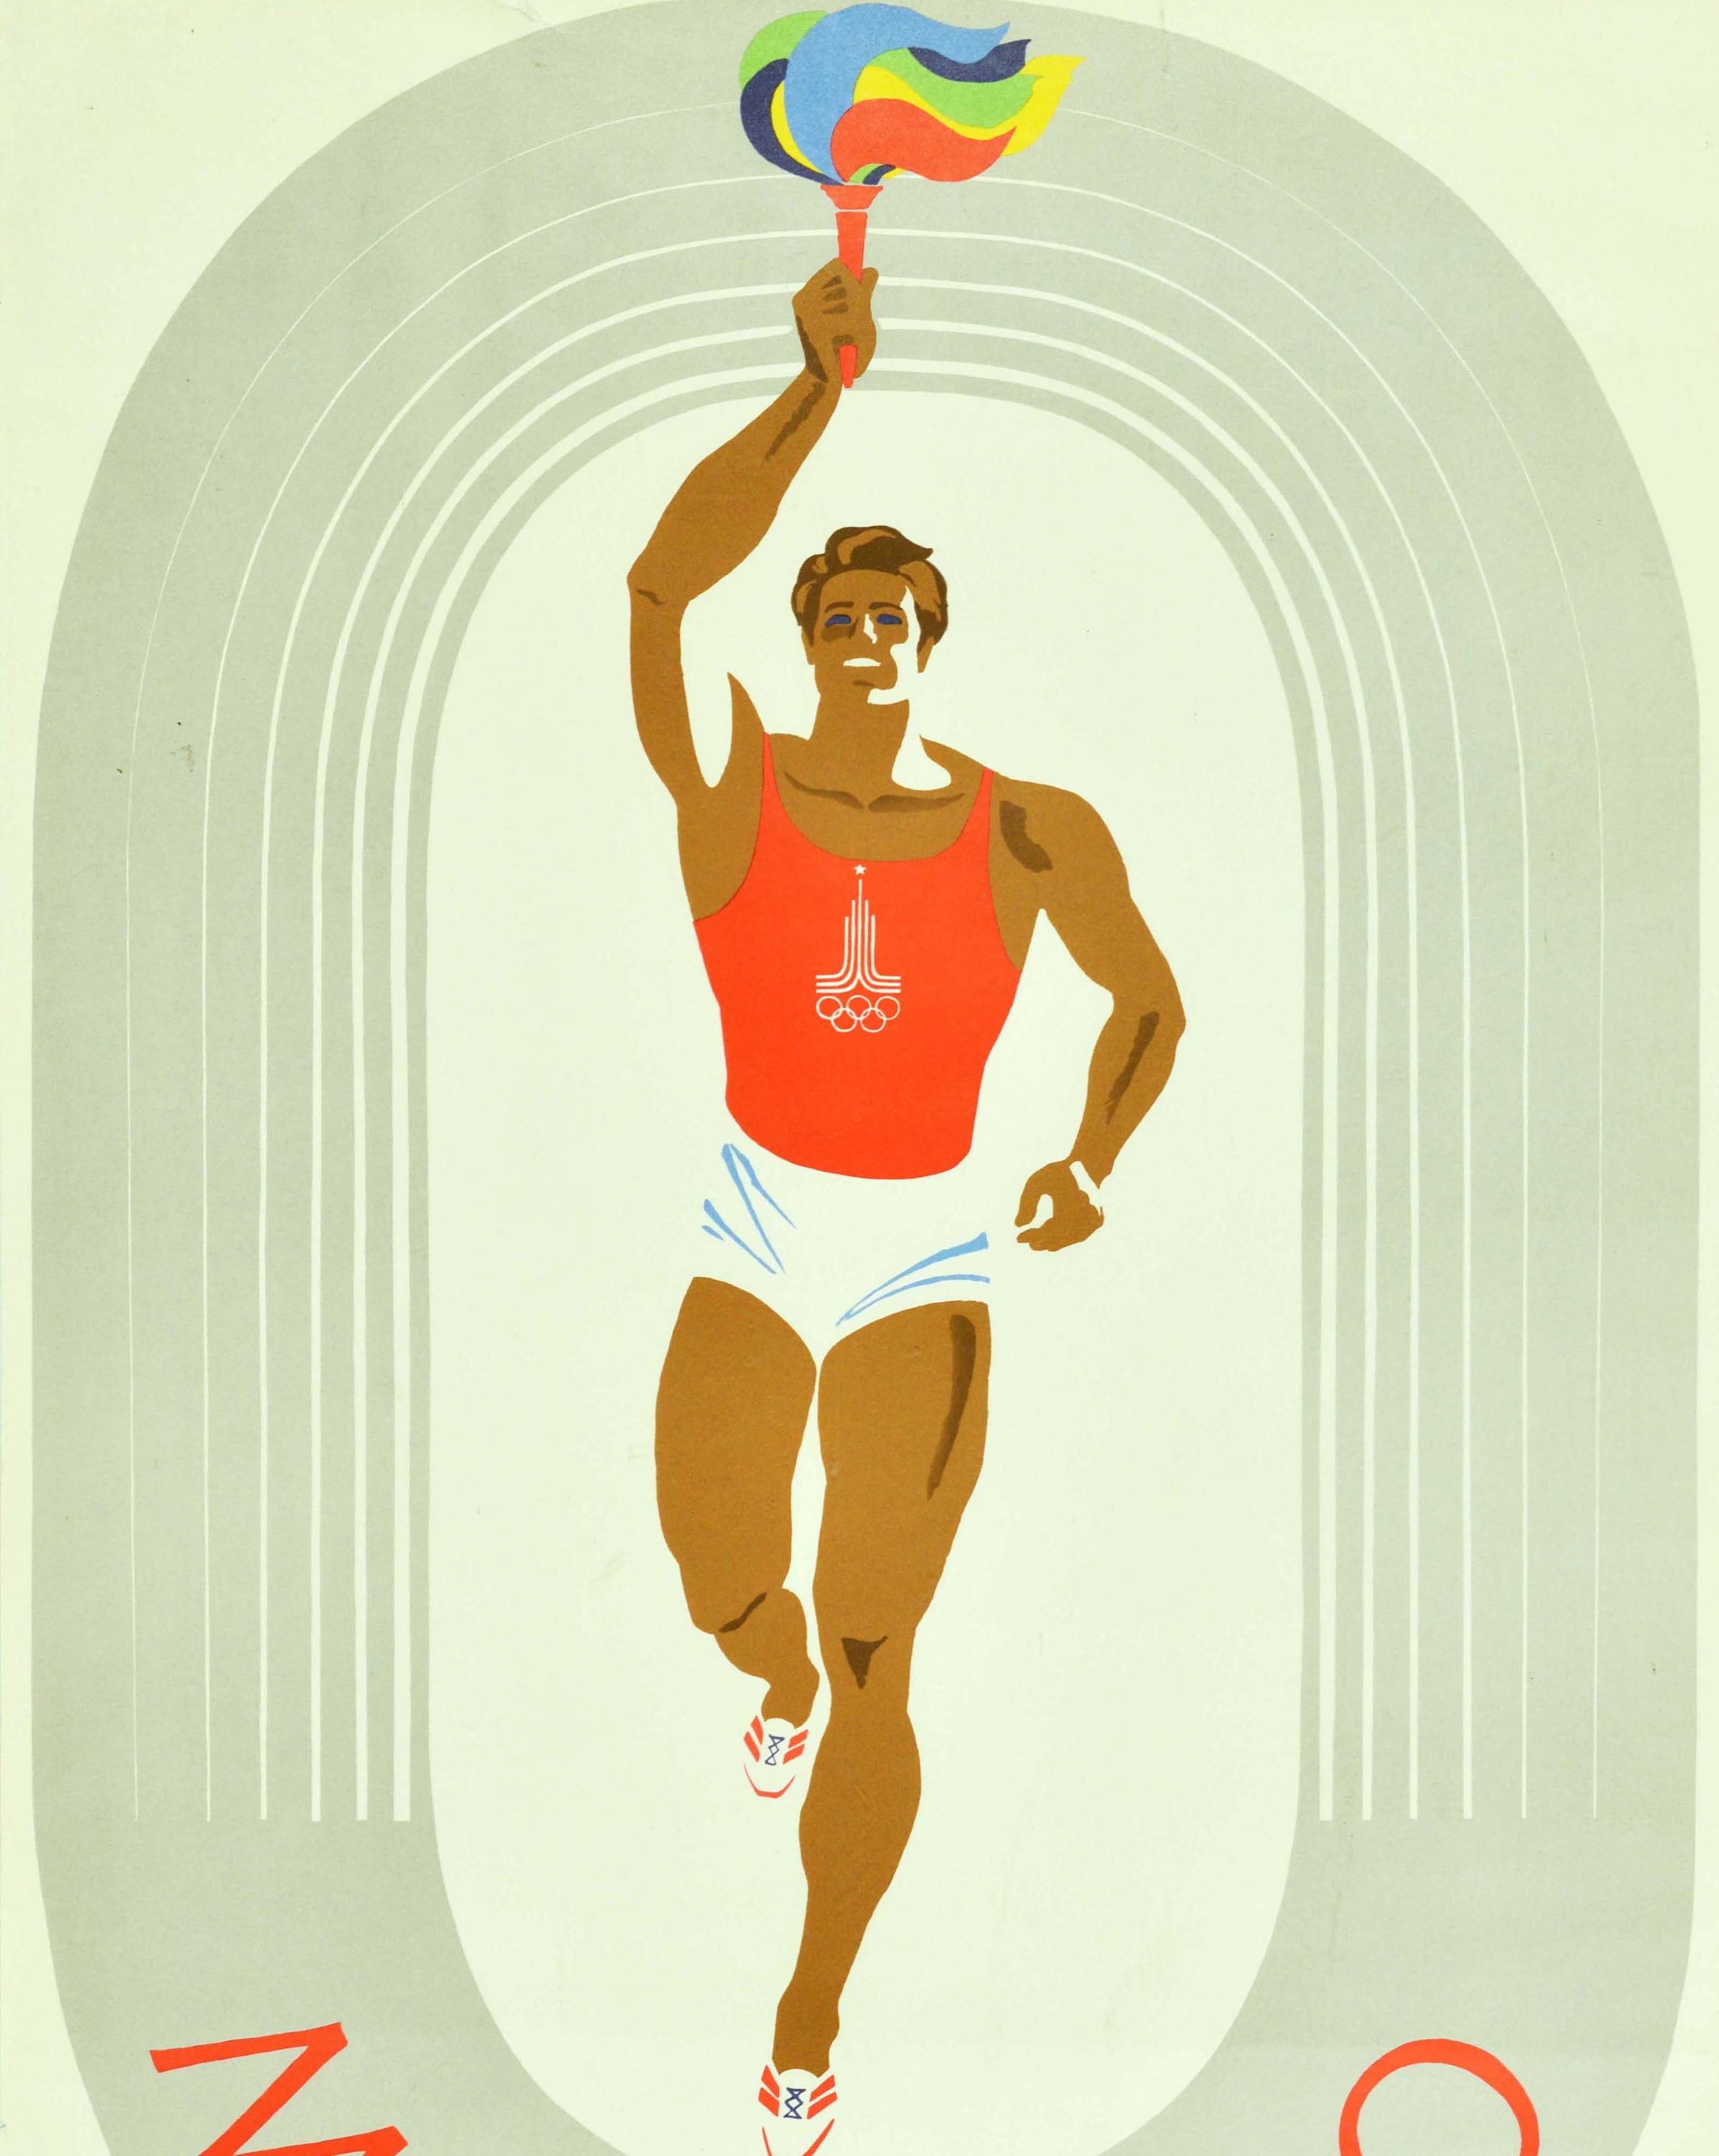 Original-Sportplakat für die Olympischen Spiele 1980 in Moskau Russland mit einem Athleten in einem roten Sportoberteil mit dem Logo der Moskauer Olympiade, der auf den Betrachter zuläuft, während er die olympische Fackel mit der Flamme in den